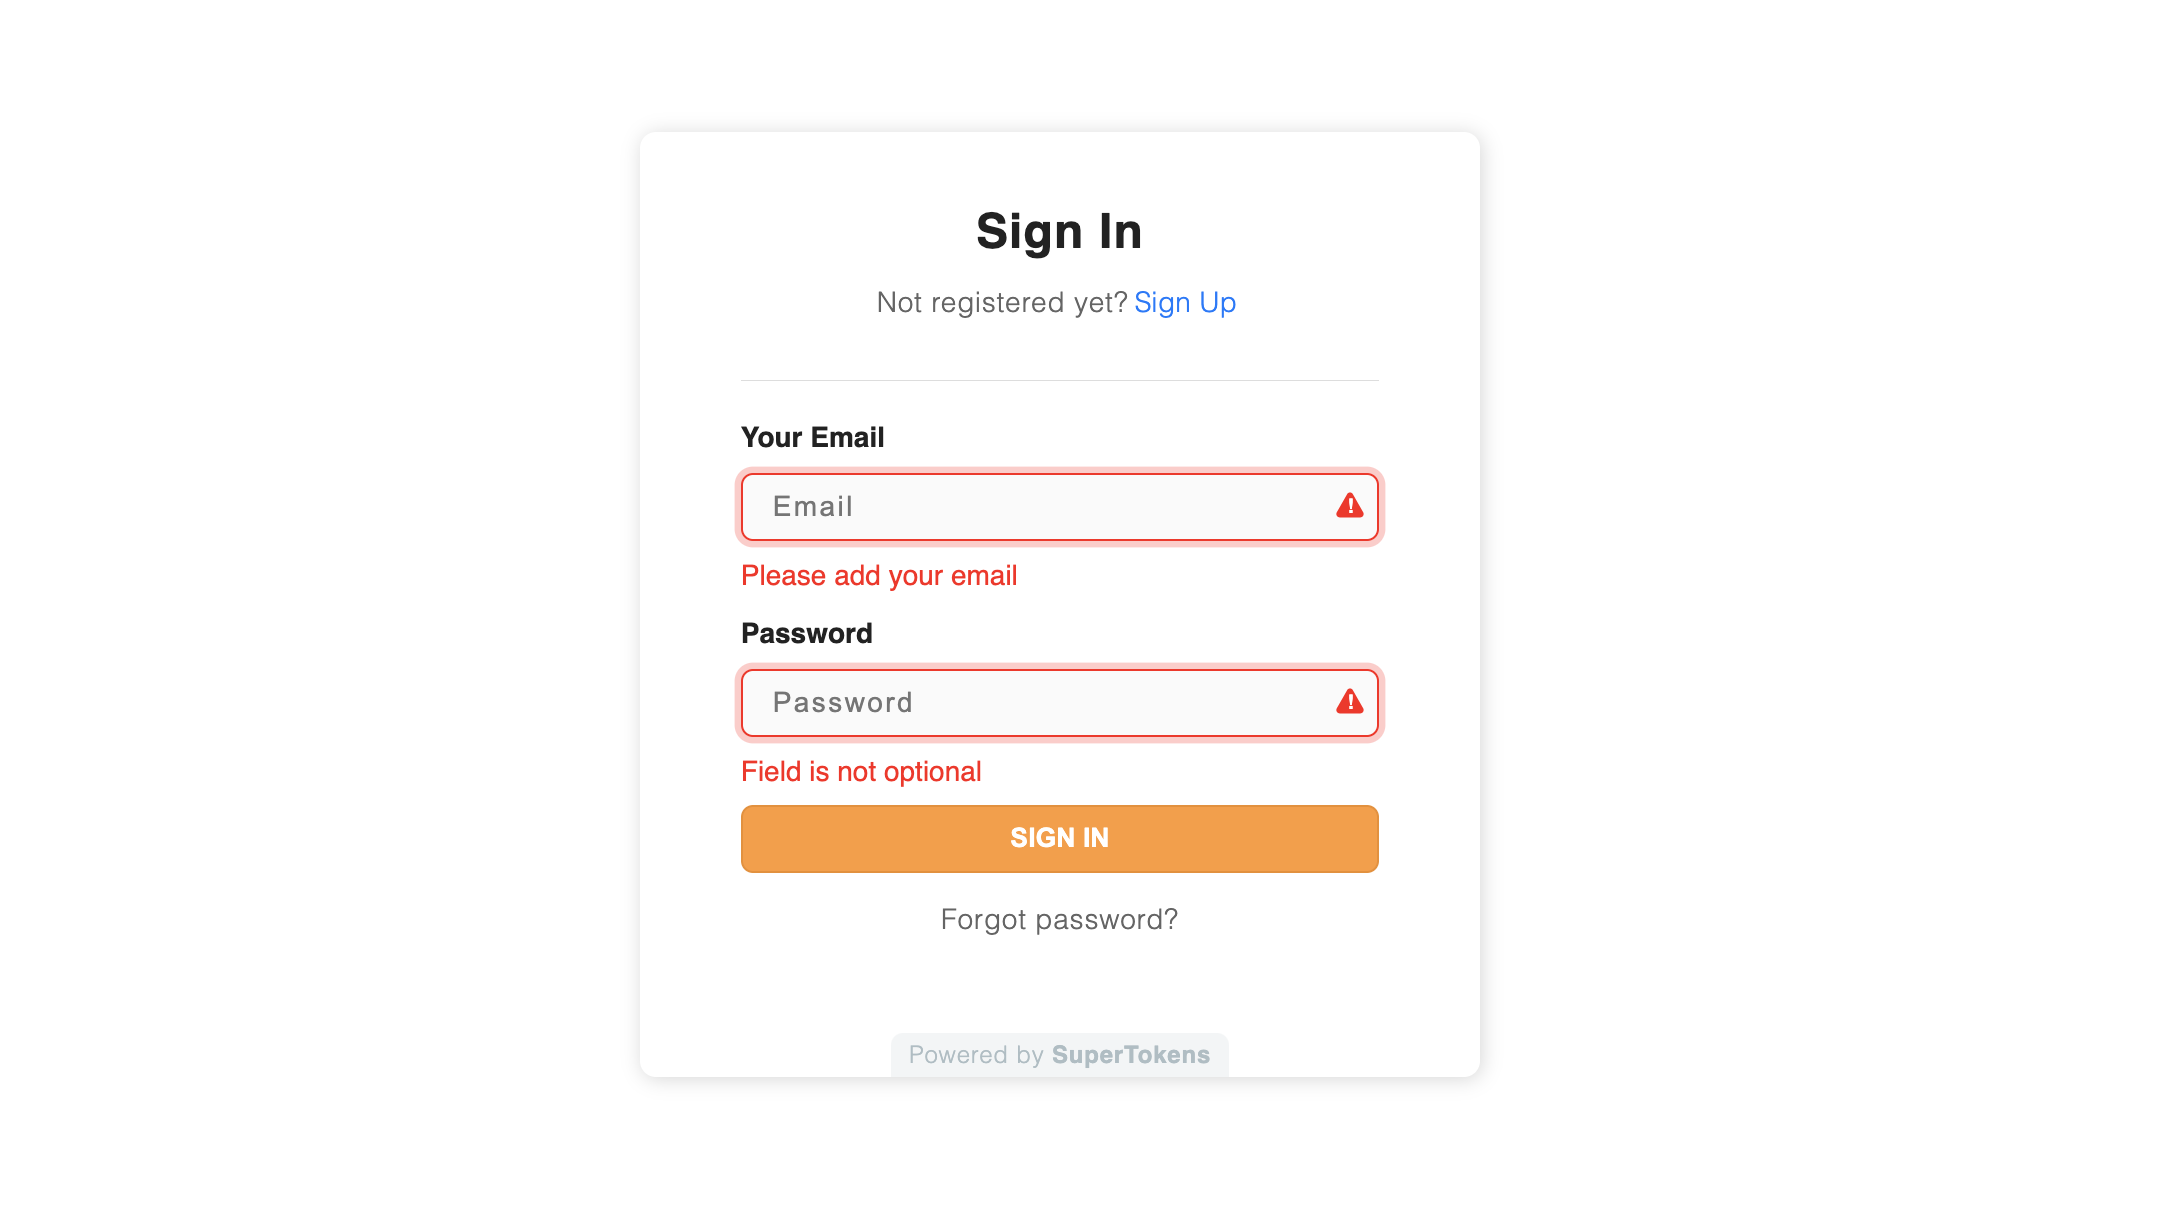 Prebuilt form UI with custom error message